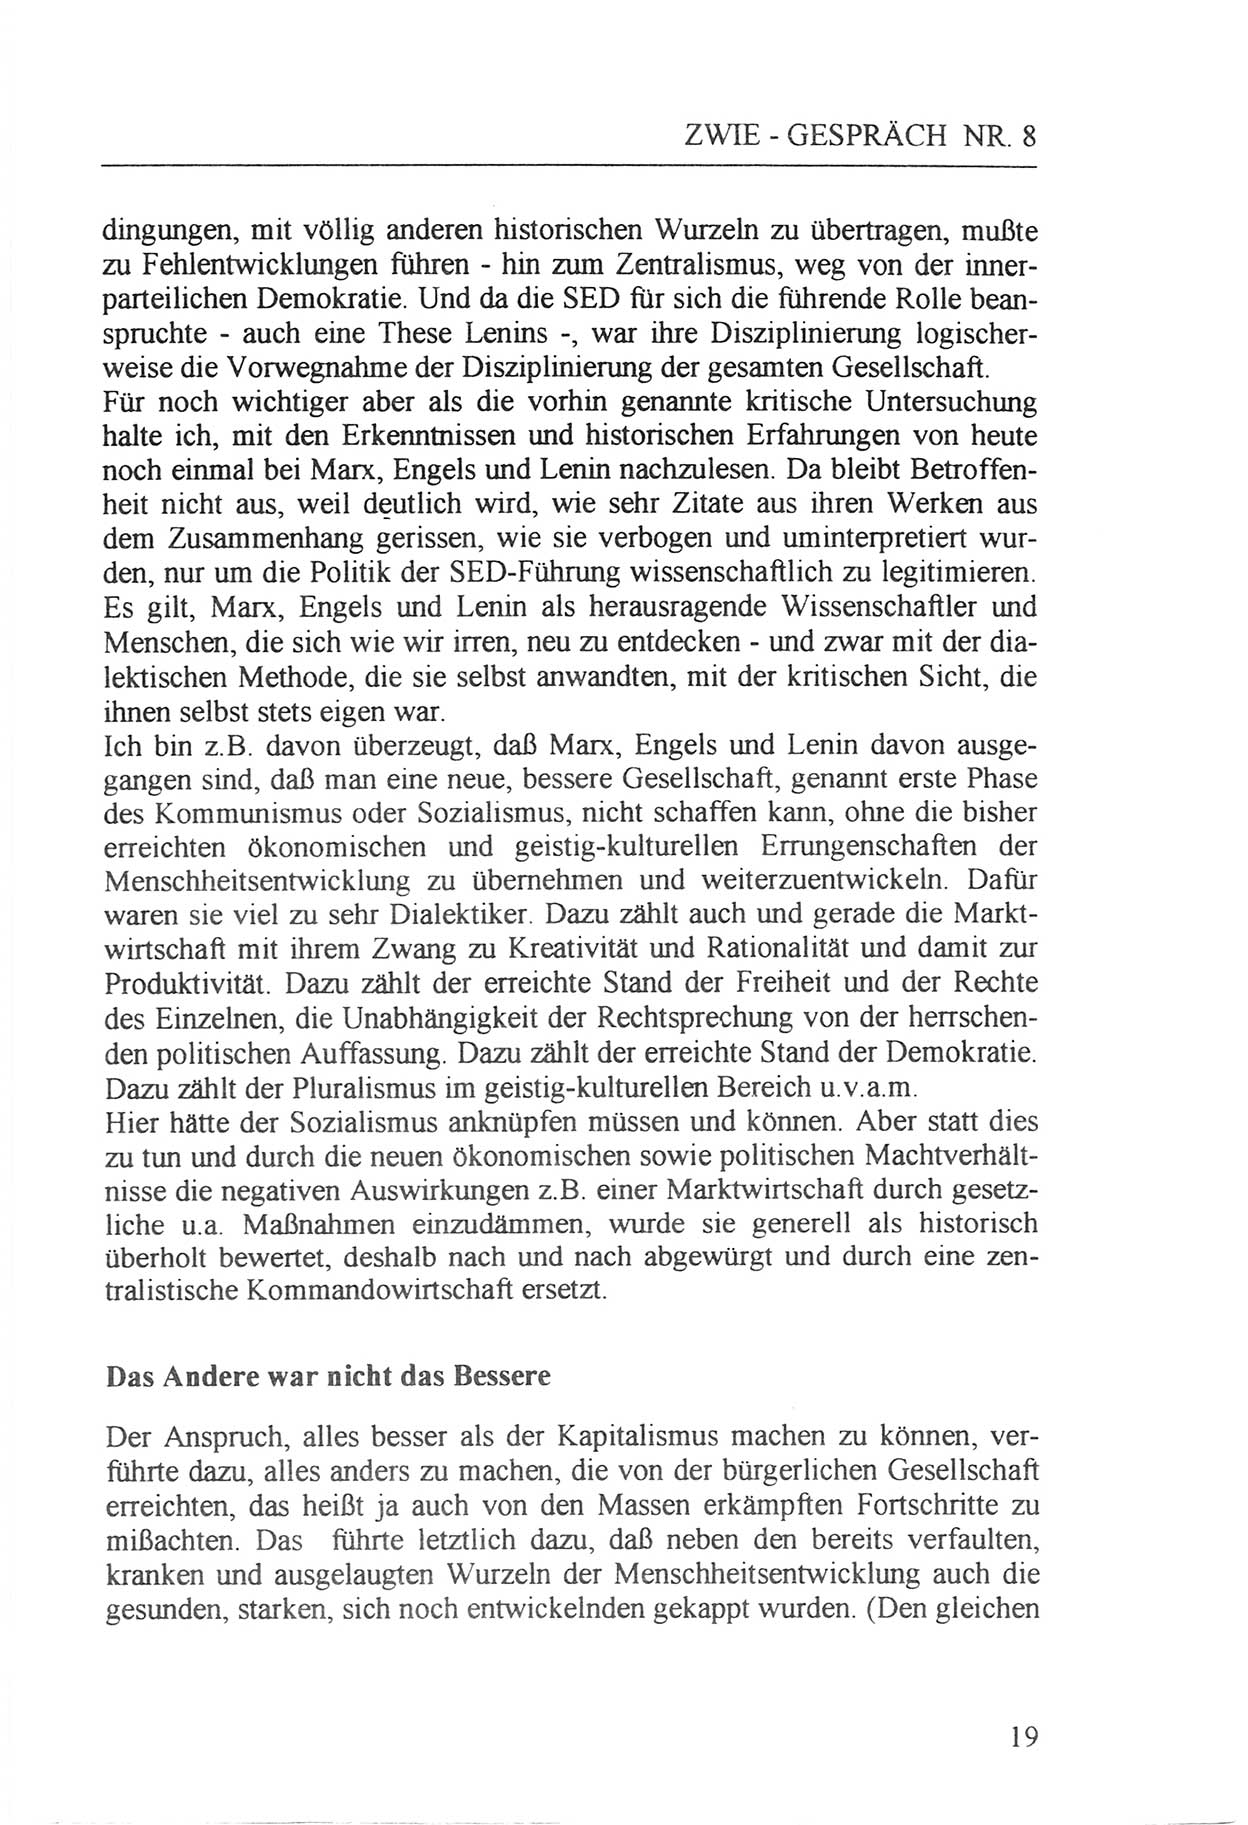 Zwie-Gespräch, Beiträge zur Aufarbeitung der Staatssicherheits-Vergangenheit [Deutsche Demokratische Republik (DDR)], Ausgabe Nr. 8, Berlin 1992, Seite 19 (Zwie-Gespr. Ausg. 8 1992, S. 19)